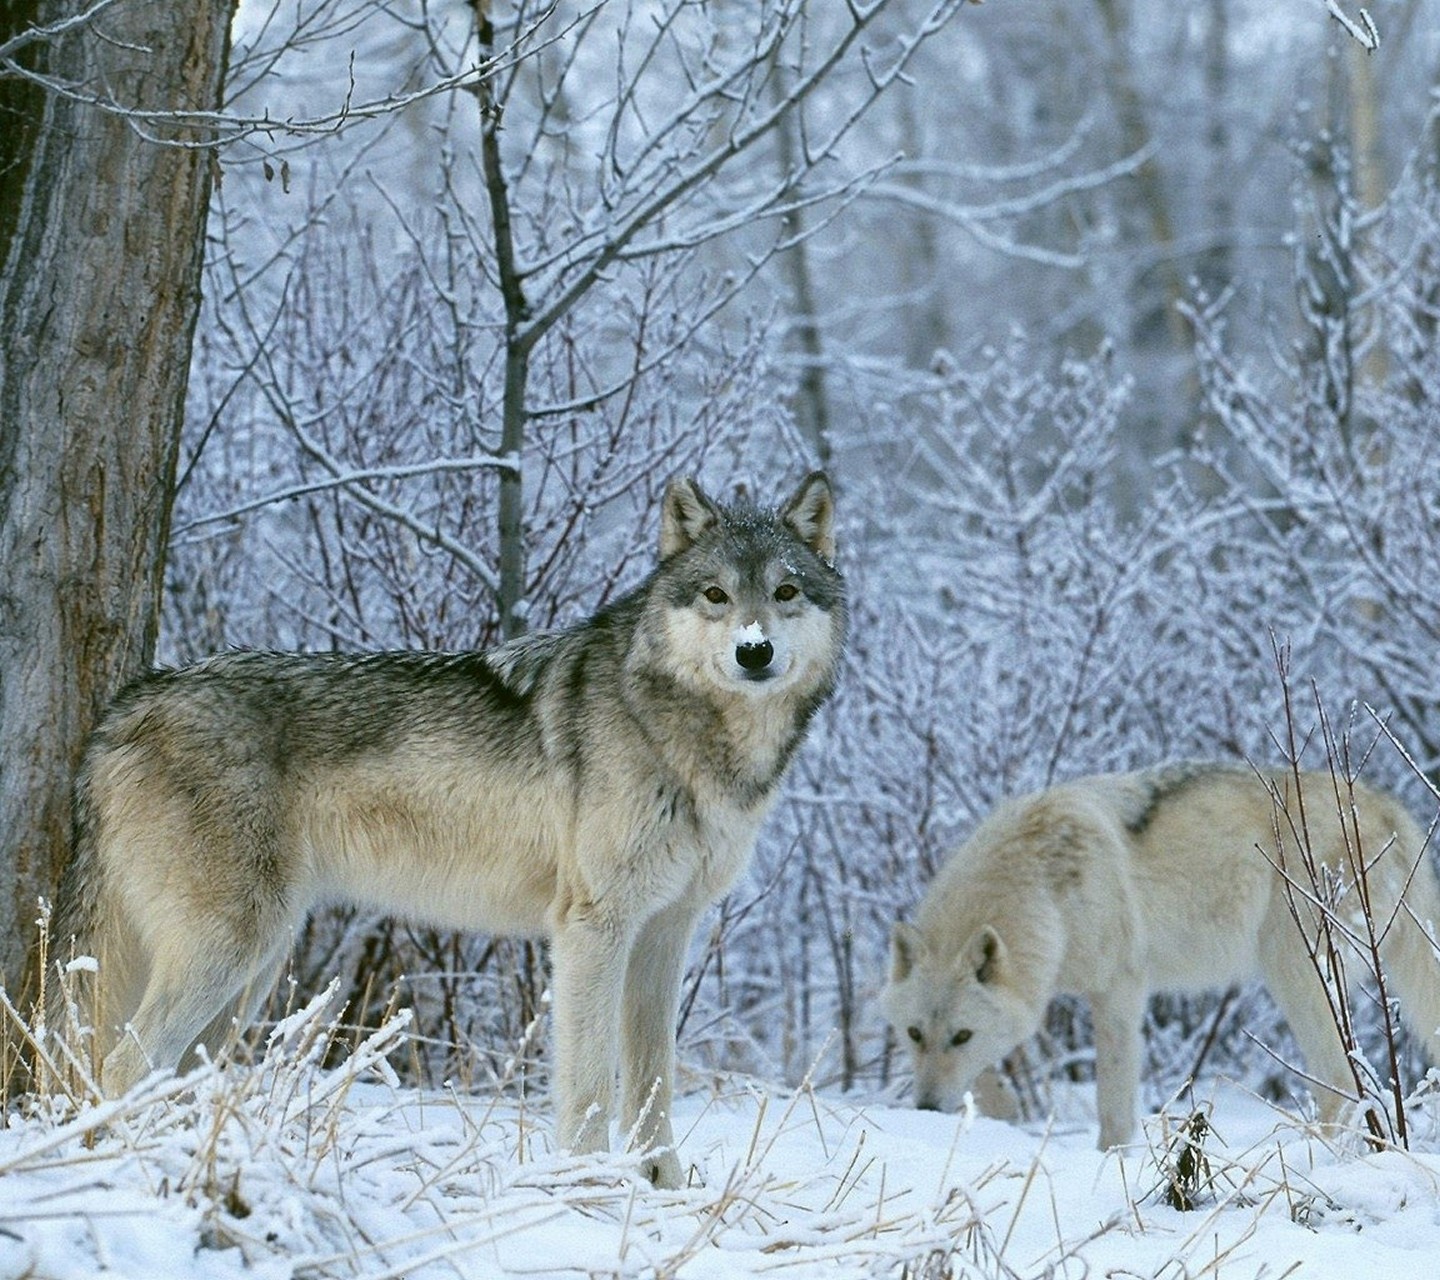 http://4.bp.blogspot.com/-9cBOsZVbJHU/UaK1O3uejpI/AAAAAAAARtY/h9Dz73DNDIA/s1600/-Animals-Wild-Animals-Wolves-Fresh-New-Hd-Wallpaper--.jpg